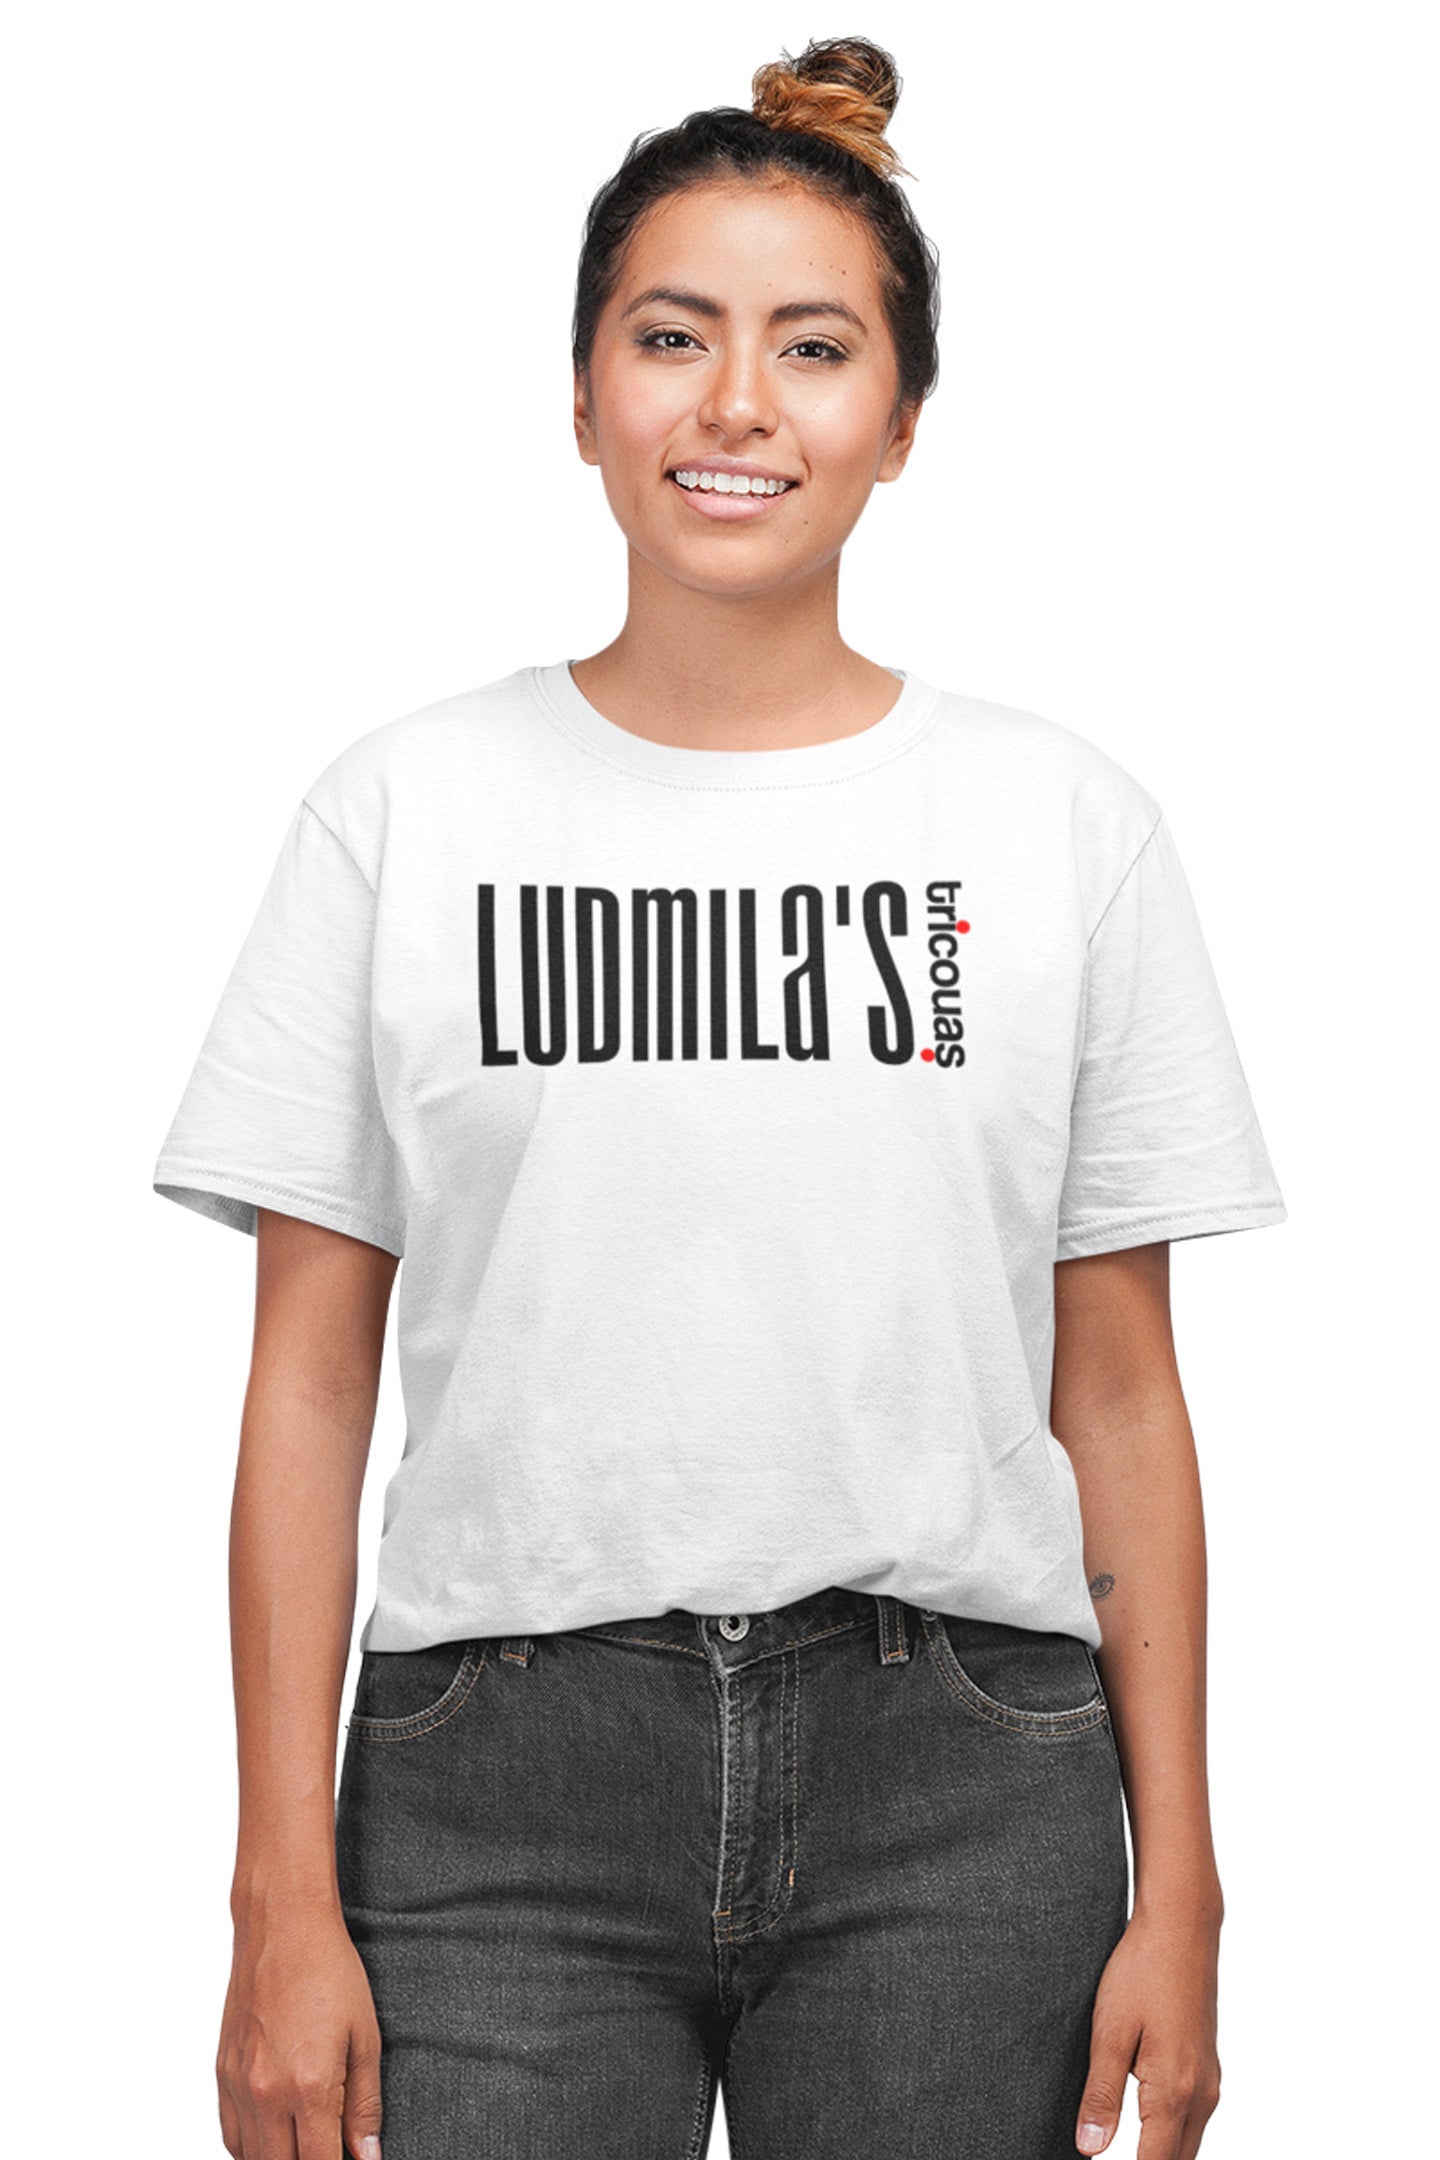 Tricou Ludmila